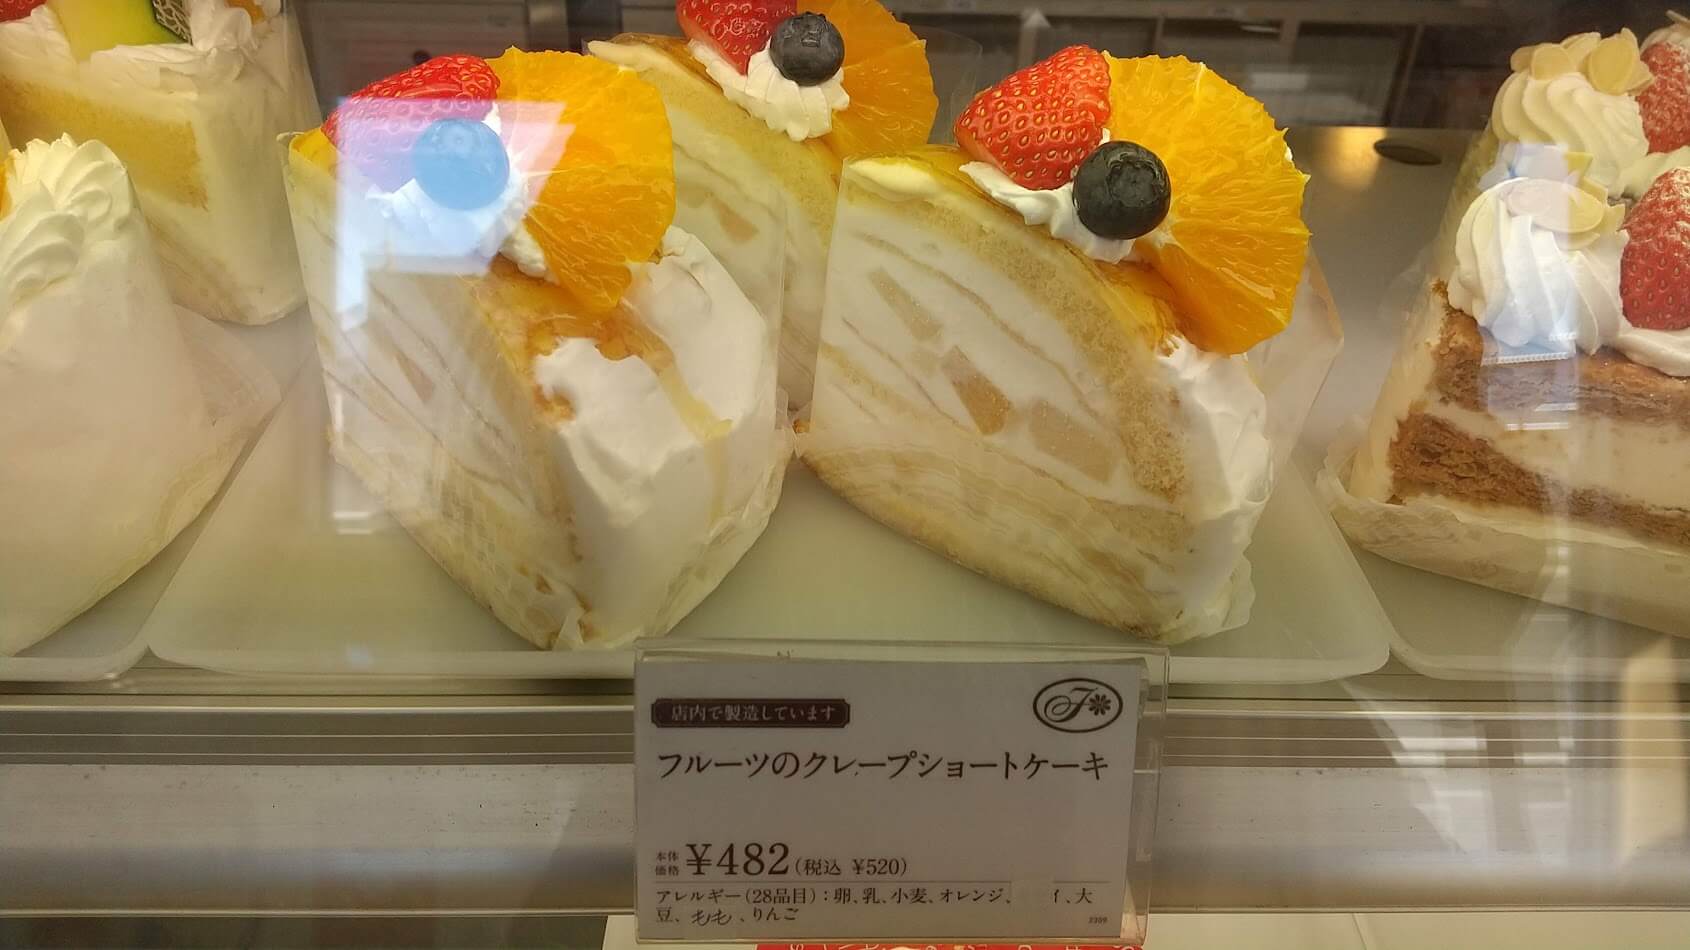 不二家飯能川寺店で店内製造されている「フルーツのクレープショートケーキ」ショーケース内の画像